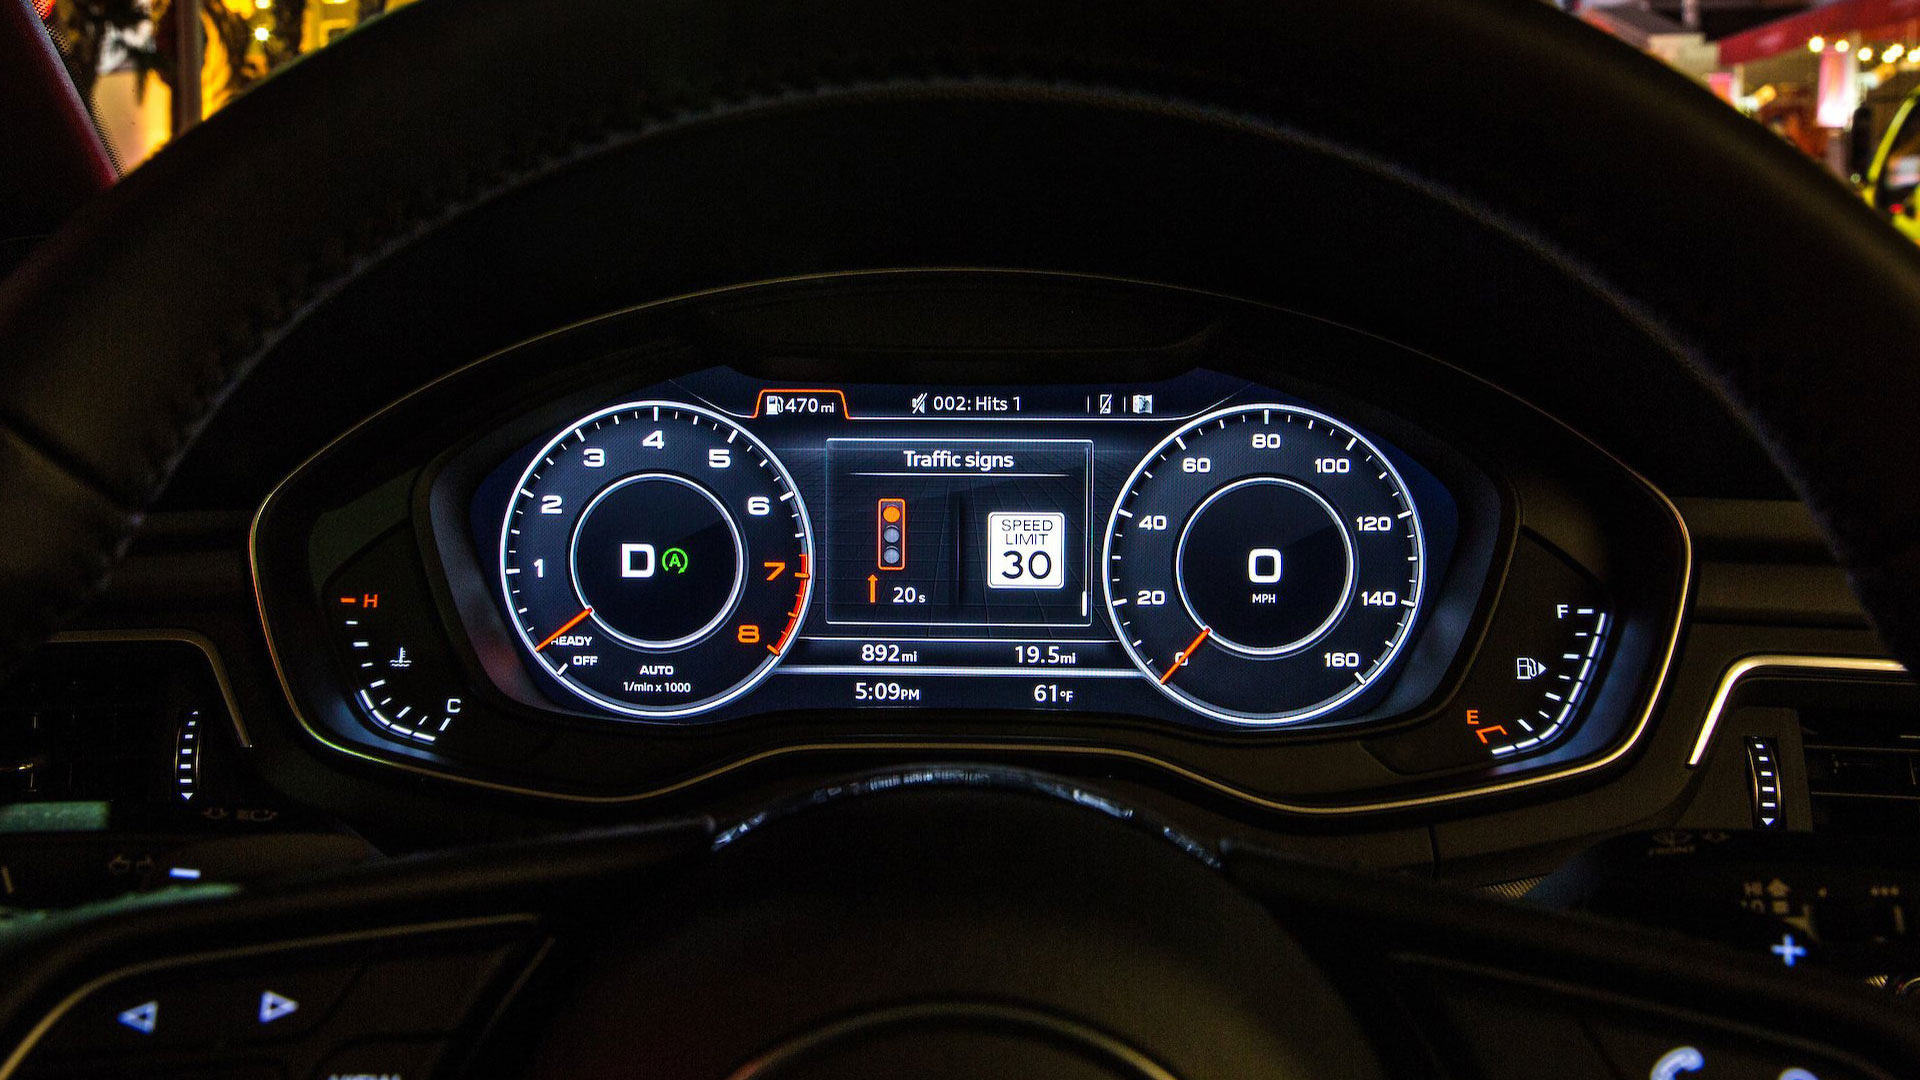 Audi, Trafik Işığı Bilgilendirme sistemini Washington'da kullanıma sundu